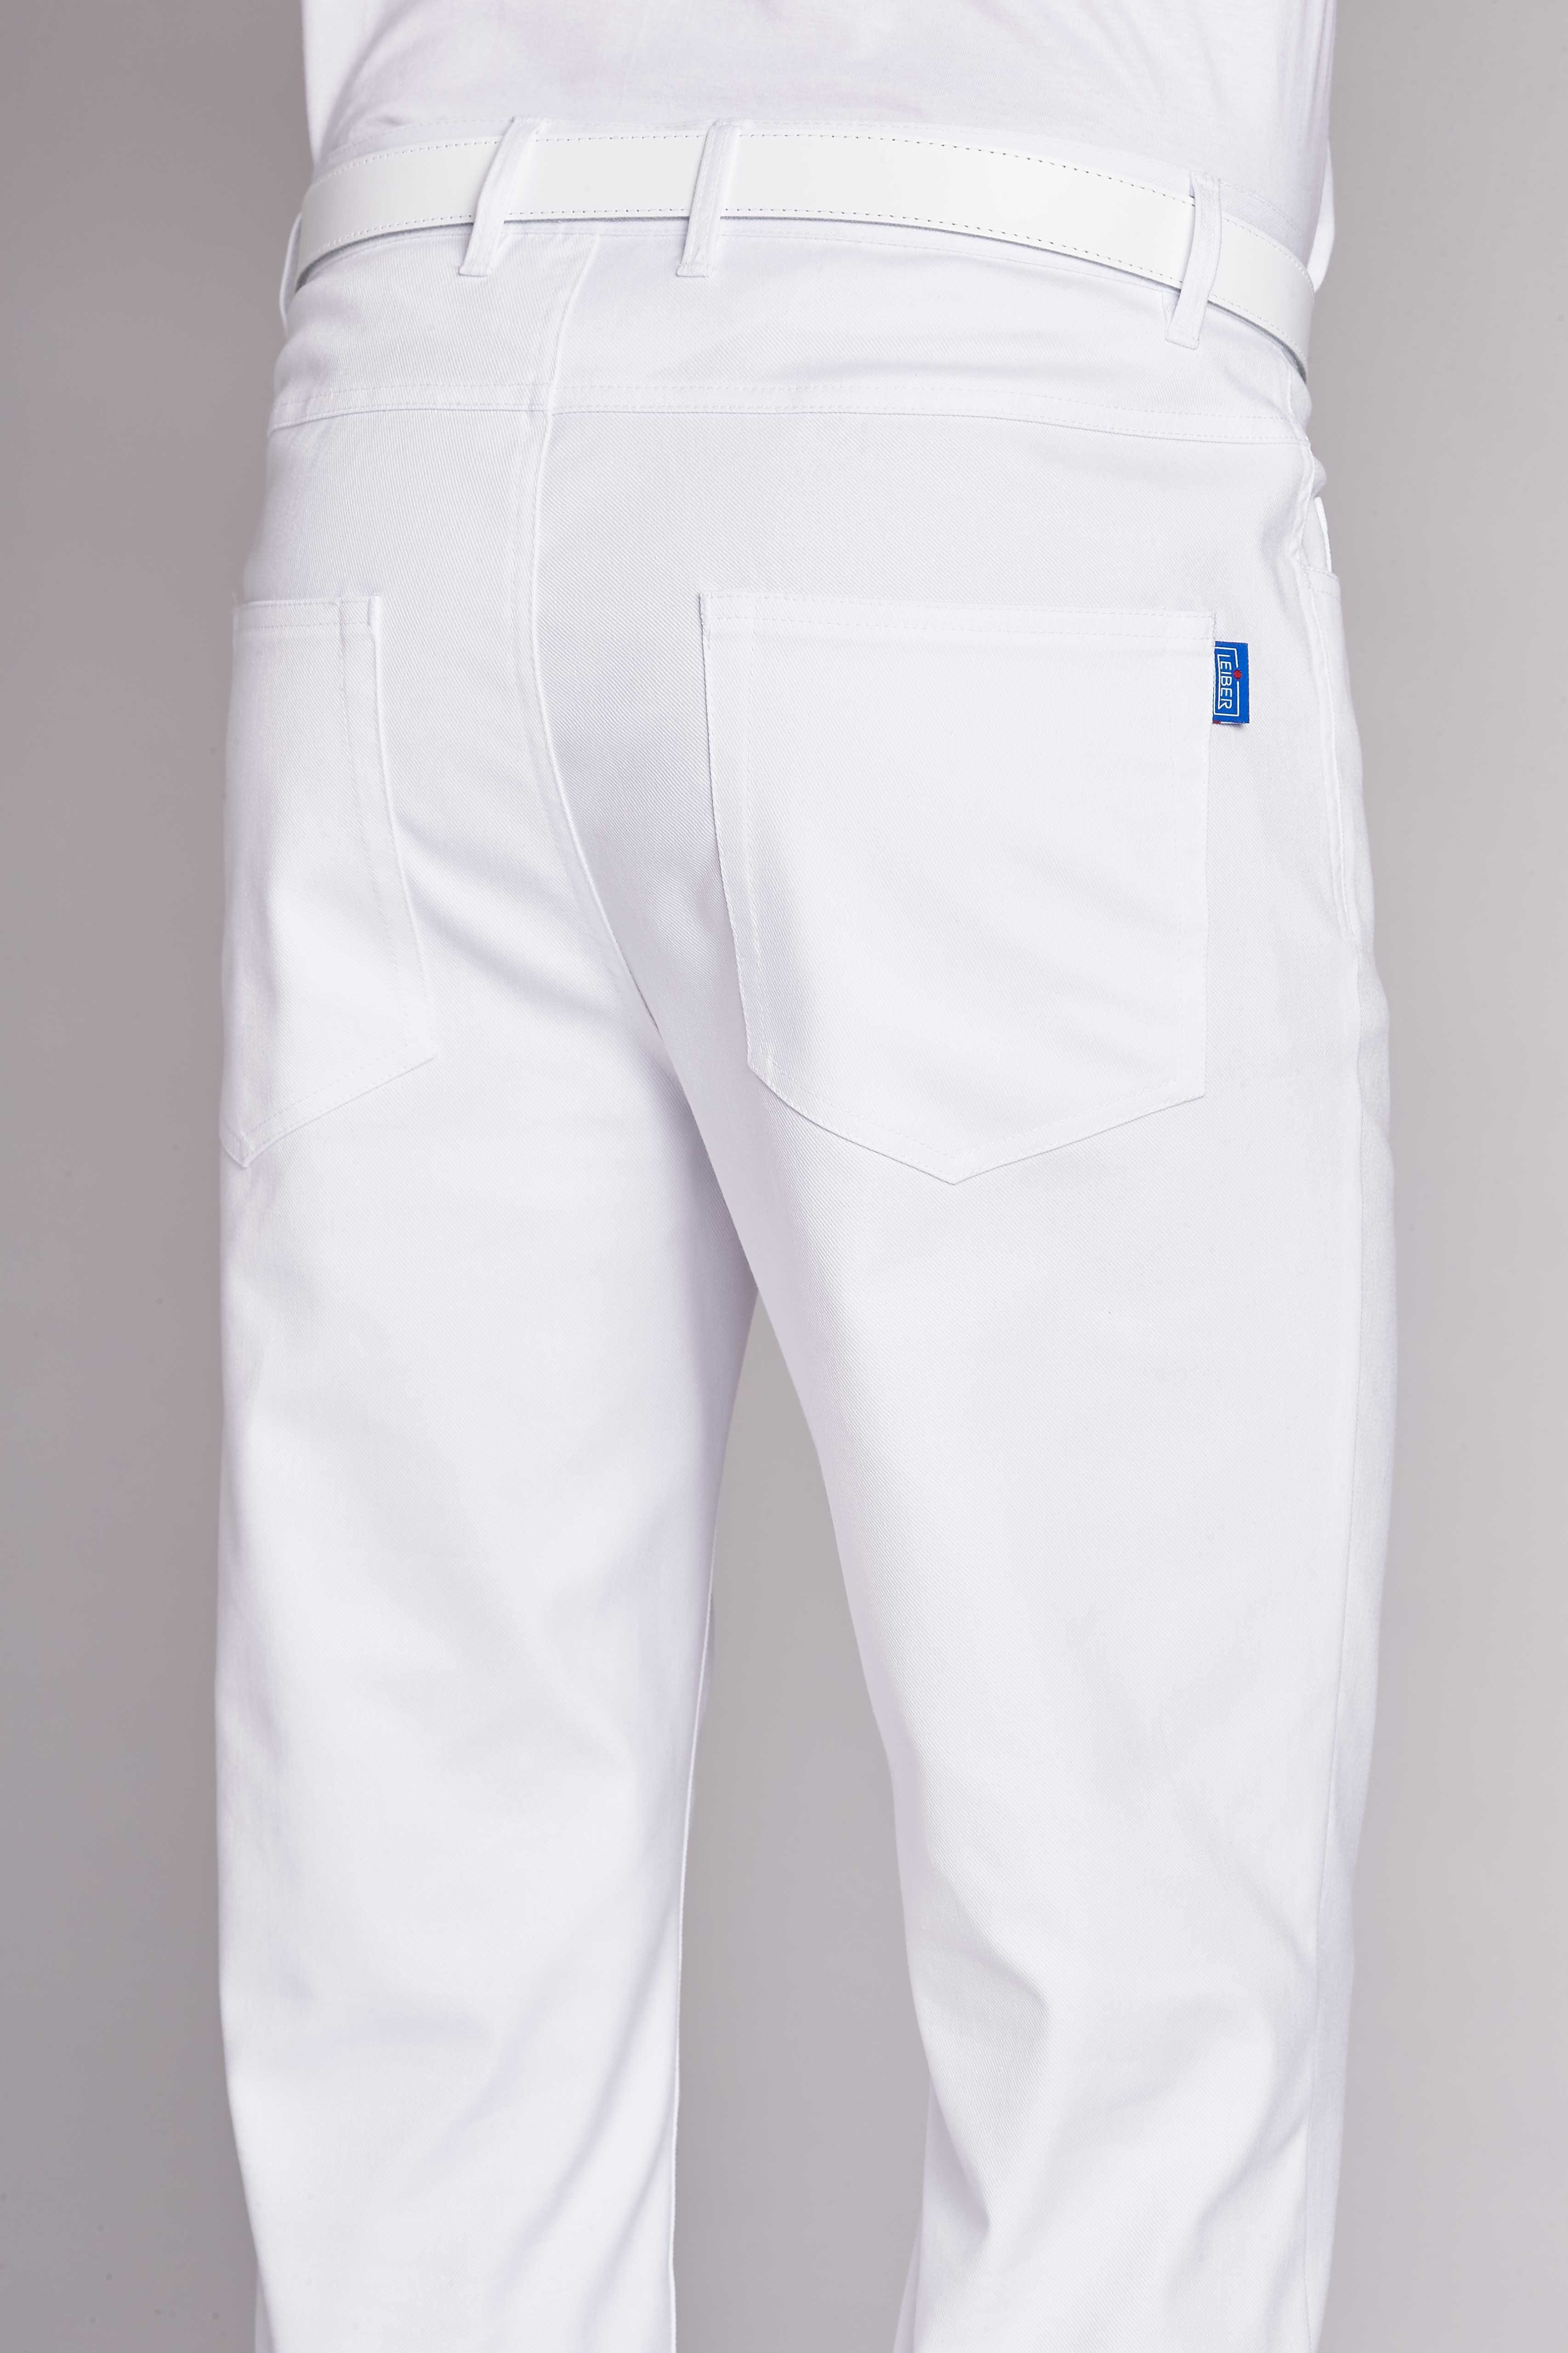 Leiber Arbeitshose Leiber Stretch 12/8300-2 weiß, 5-Pocket Herren-Jeans